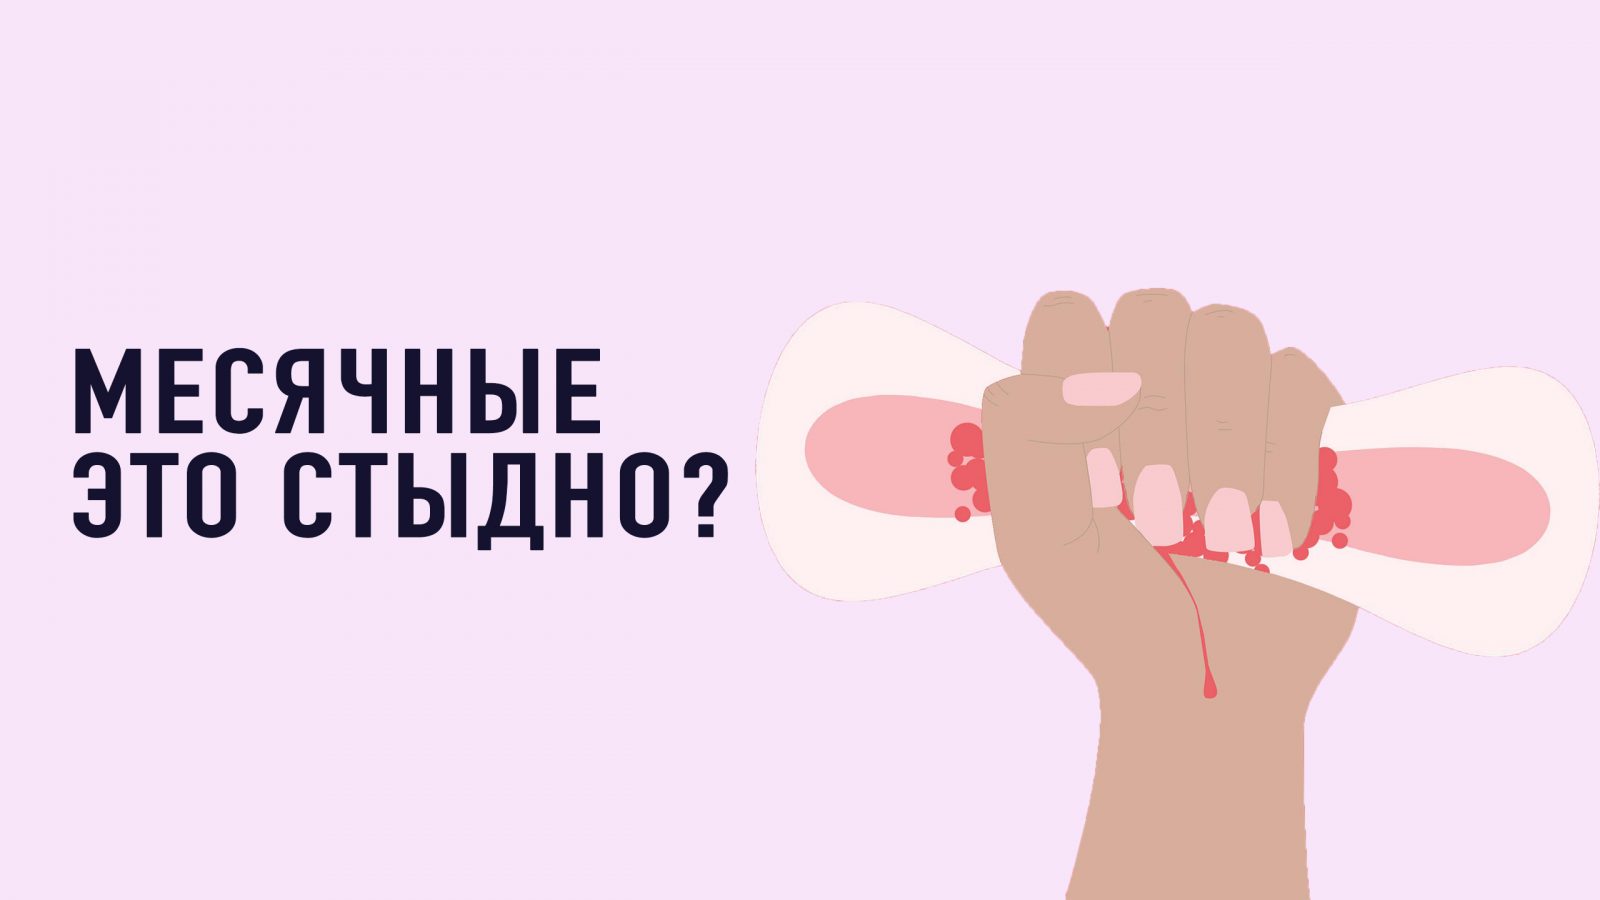 5 міфів про менструацію | Уляна Супрун | Блог